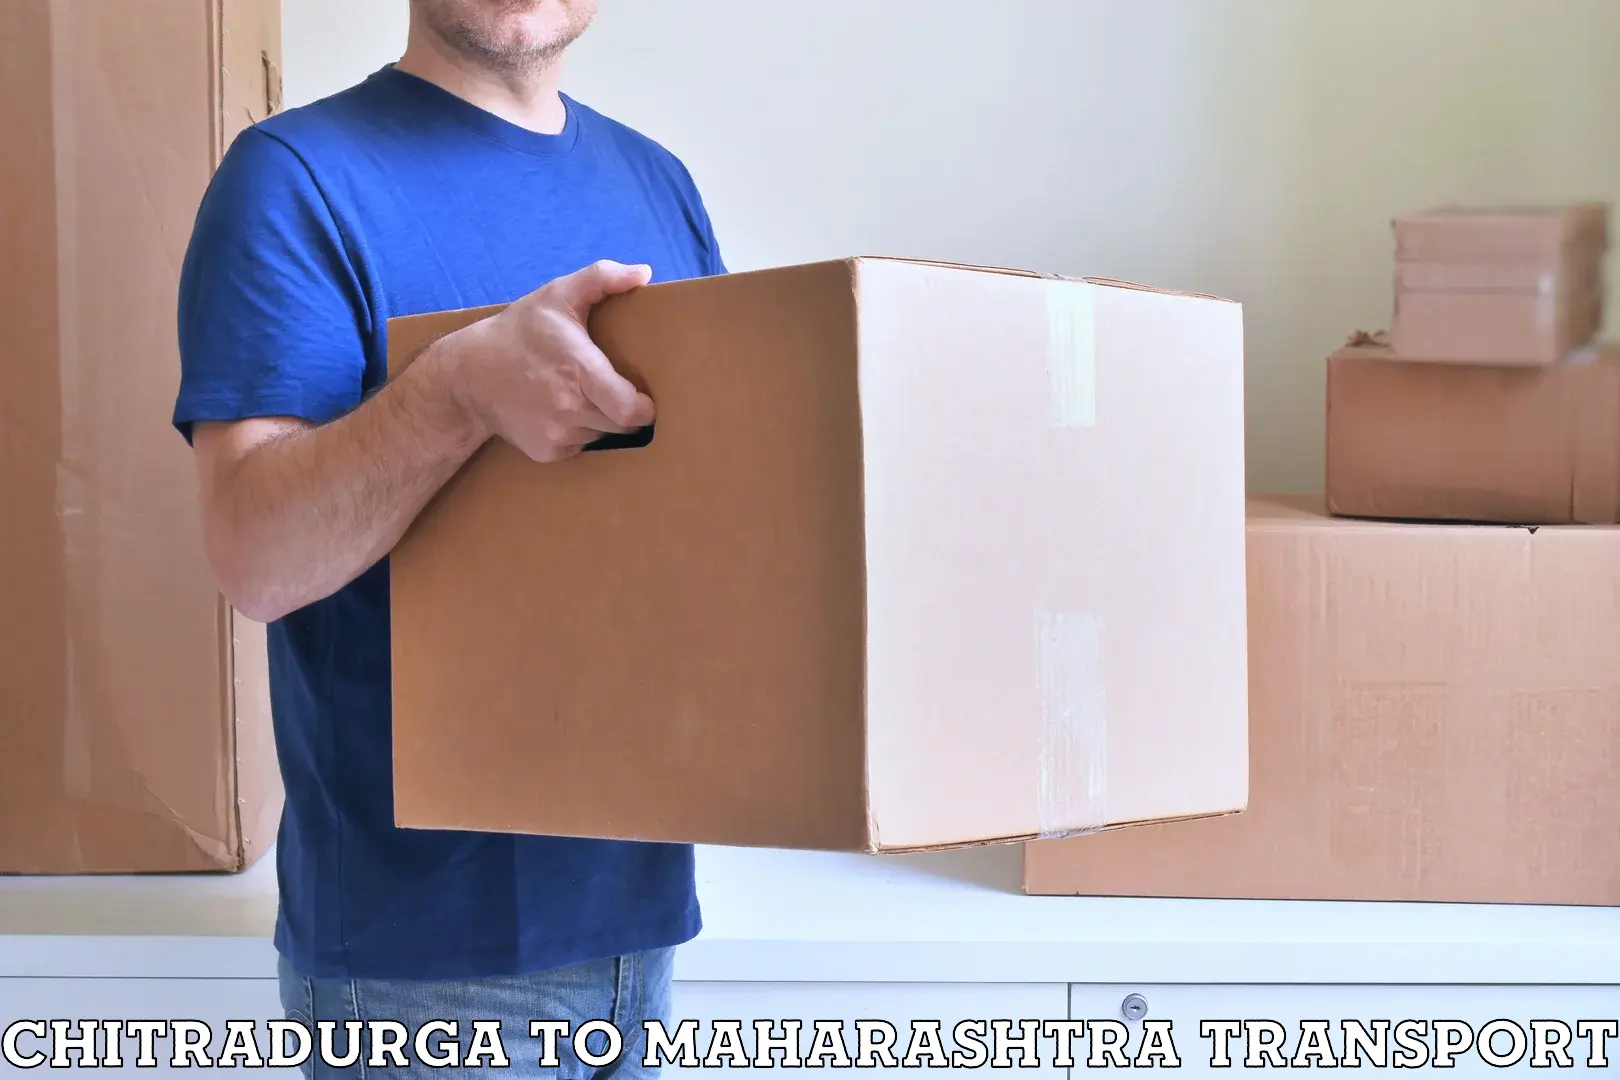 Furniture transport service in Chitradurga to Jasai